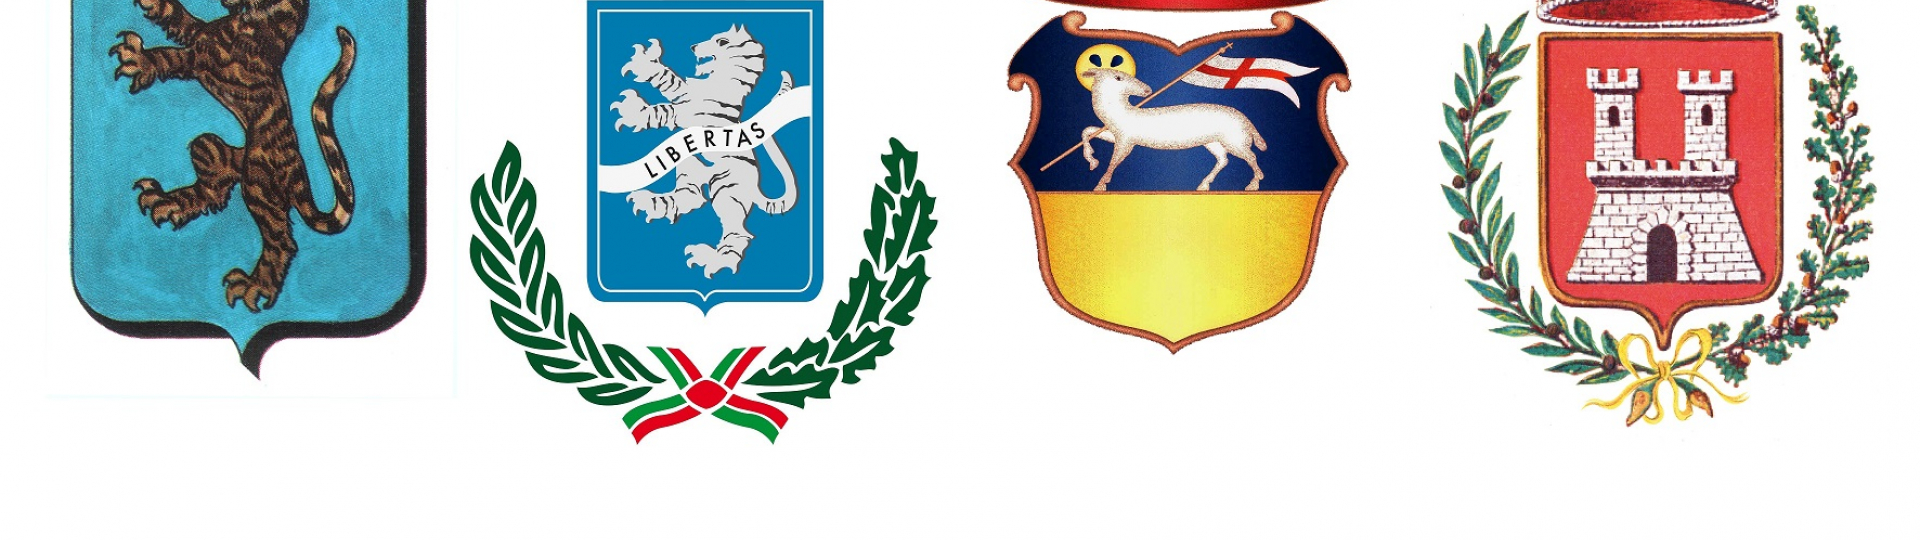 stemma unione comunale del chianti fiorentino